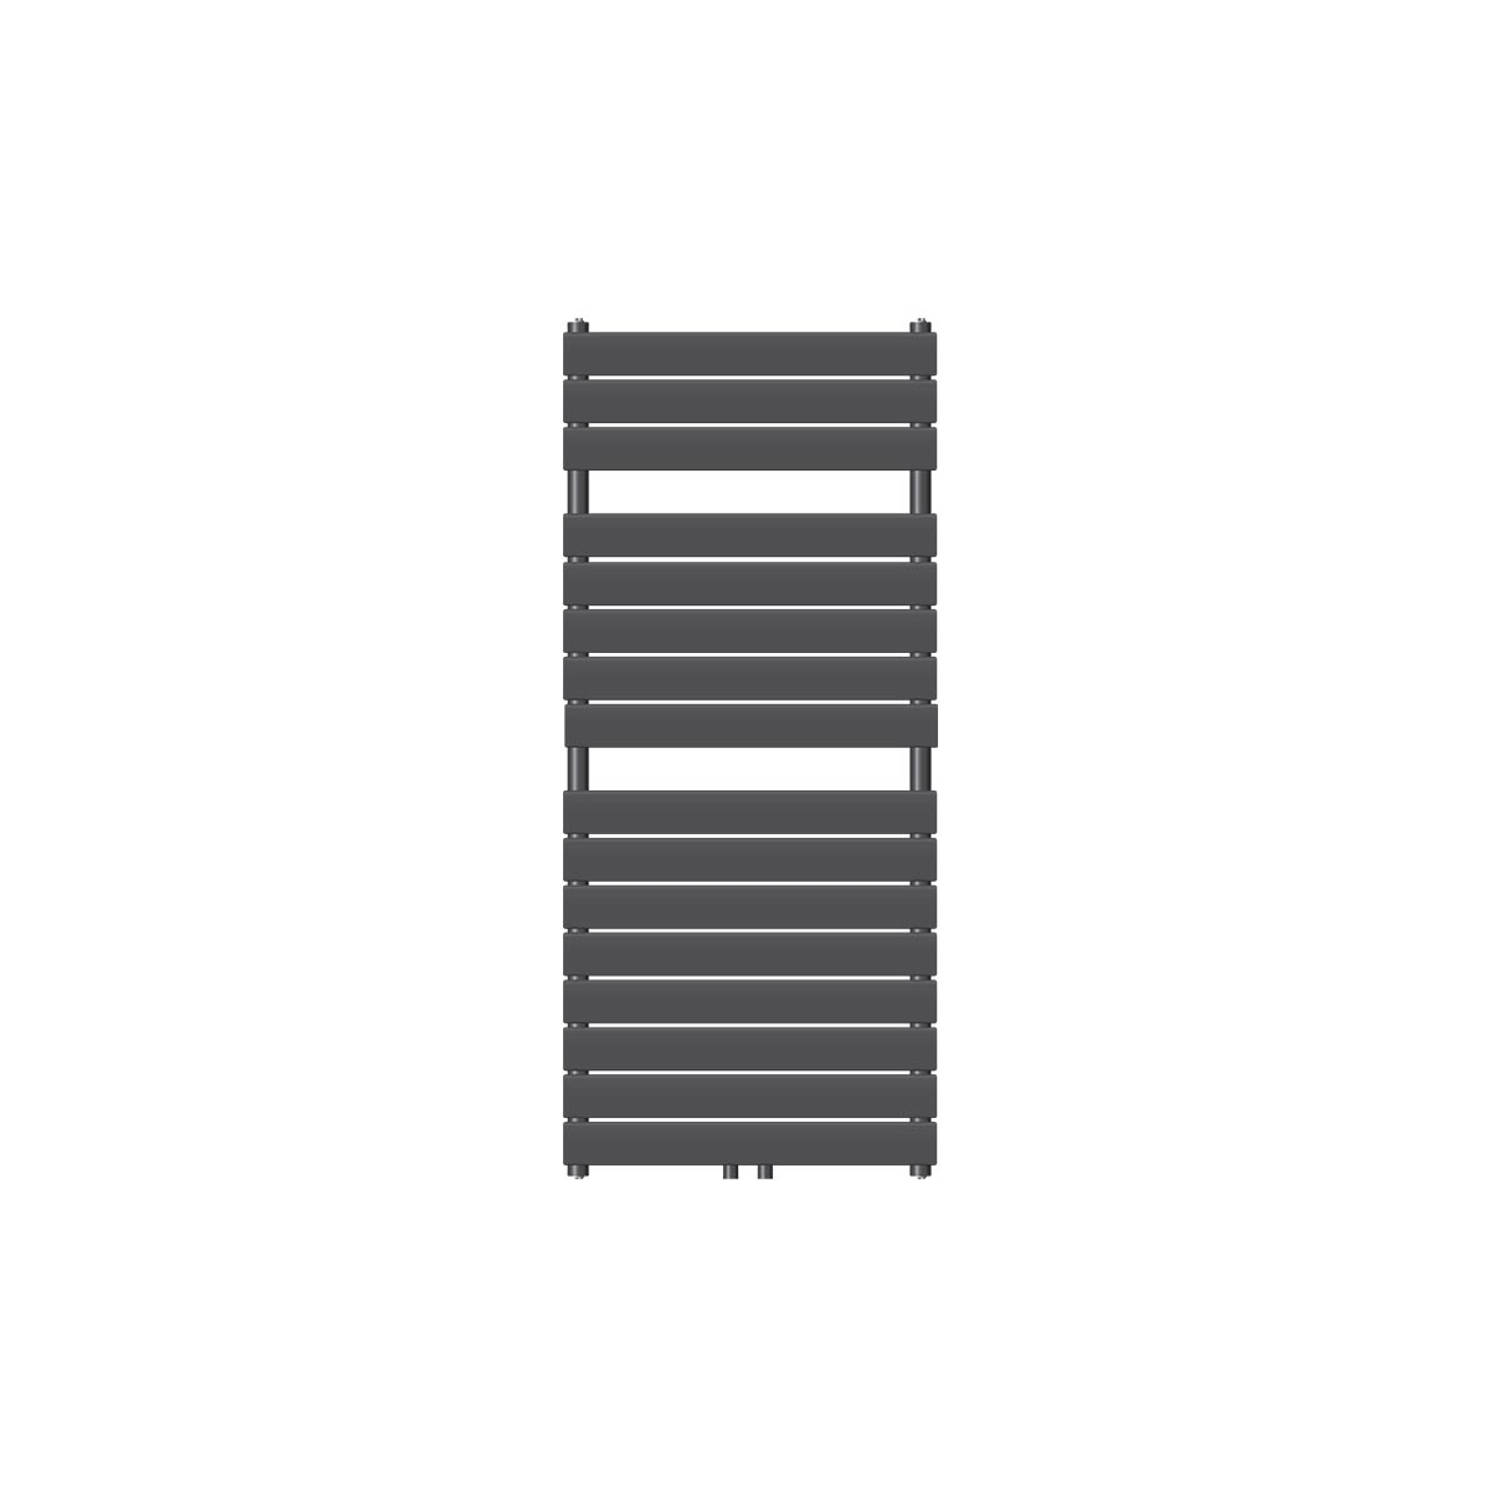 LuxeBath badkamer radiator Stoom 600x1200 mm, antraciet, middenaansluiting 50 mm, éénlaags, vlak, verticaal, design radiator handdoekwarmer handdoekdroger paneel radiator verwarmin